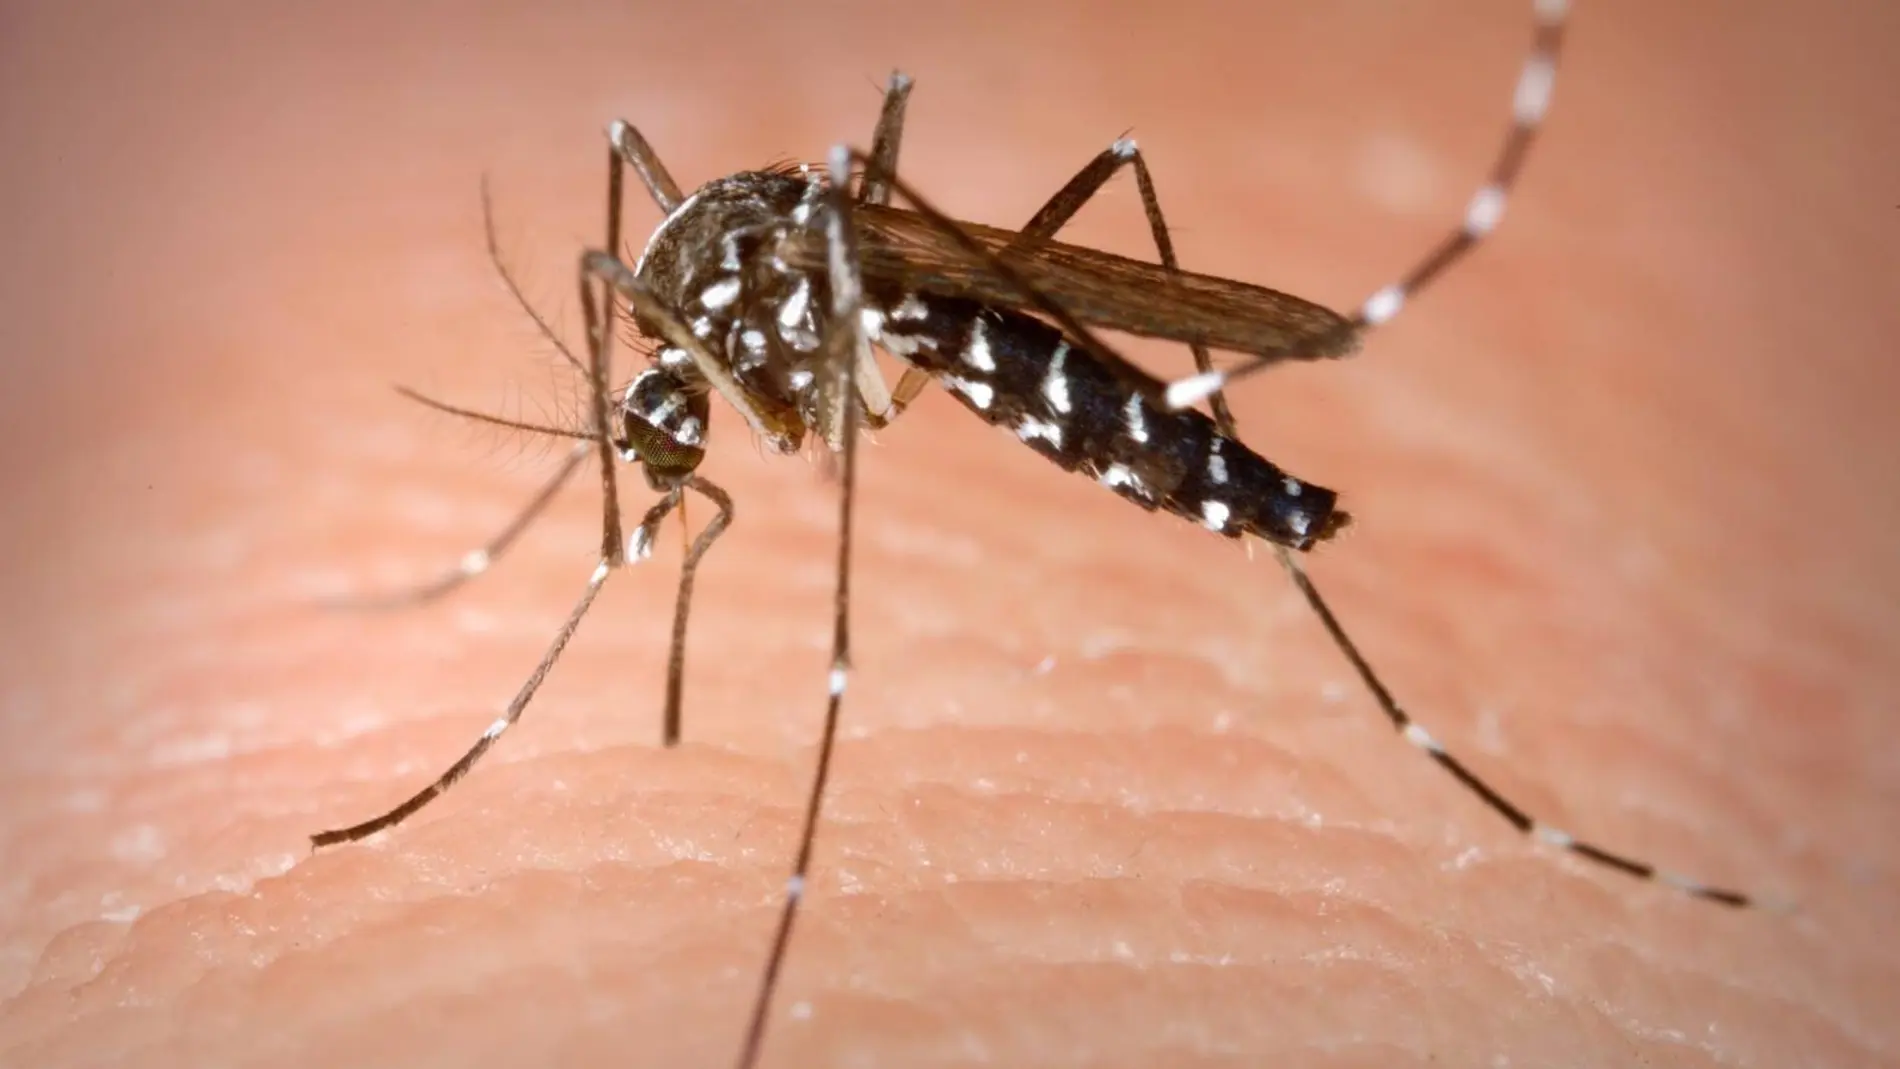 Los arbovirus –denge, zika, chinkunguya– se expanden por el mundo por culpa del cambio climático y la globalización y Cataluña tiene desde 2004 el mosquito que las transmite, el tigre